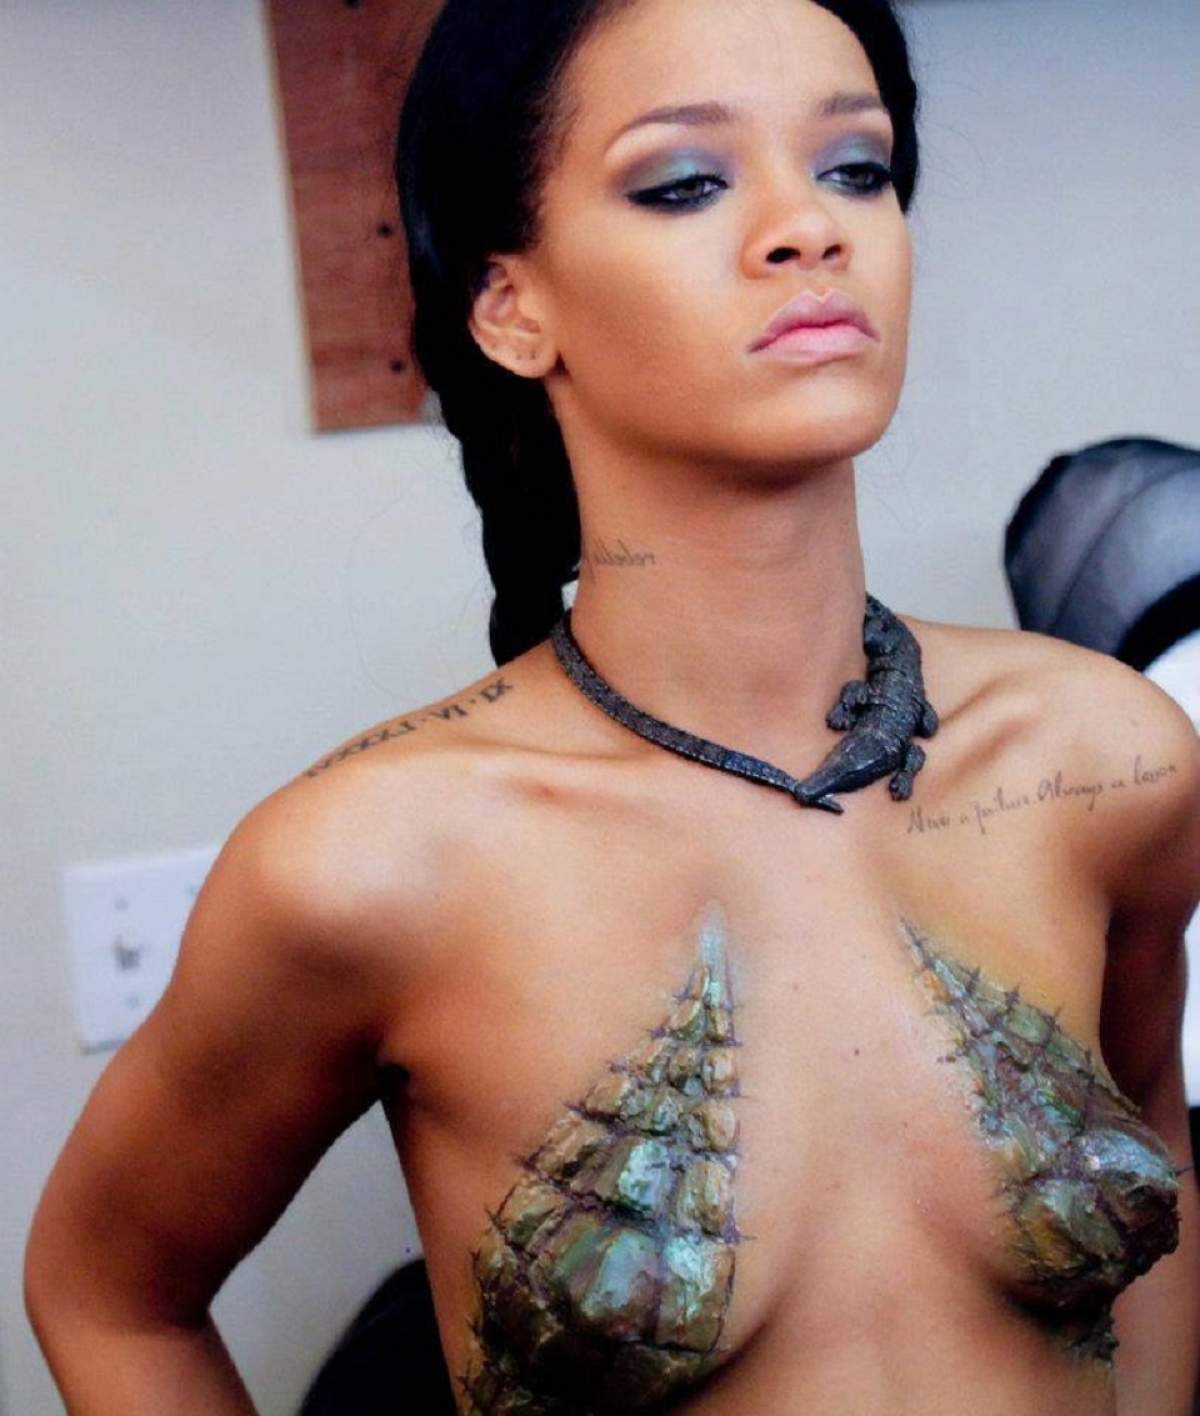 Rihanna, în ipostaze tandre cu noul ei iubit! Uite cu cine îşi reface viaţa! / Foto